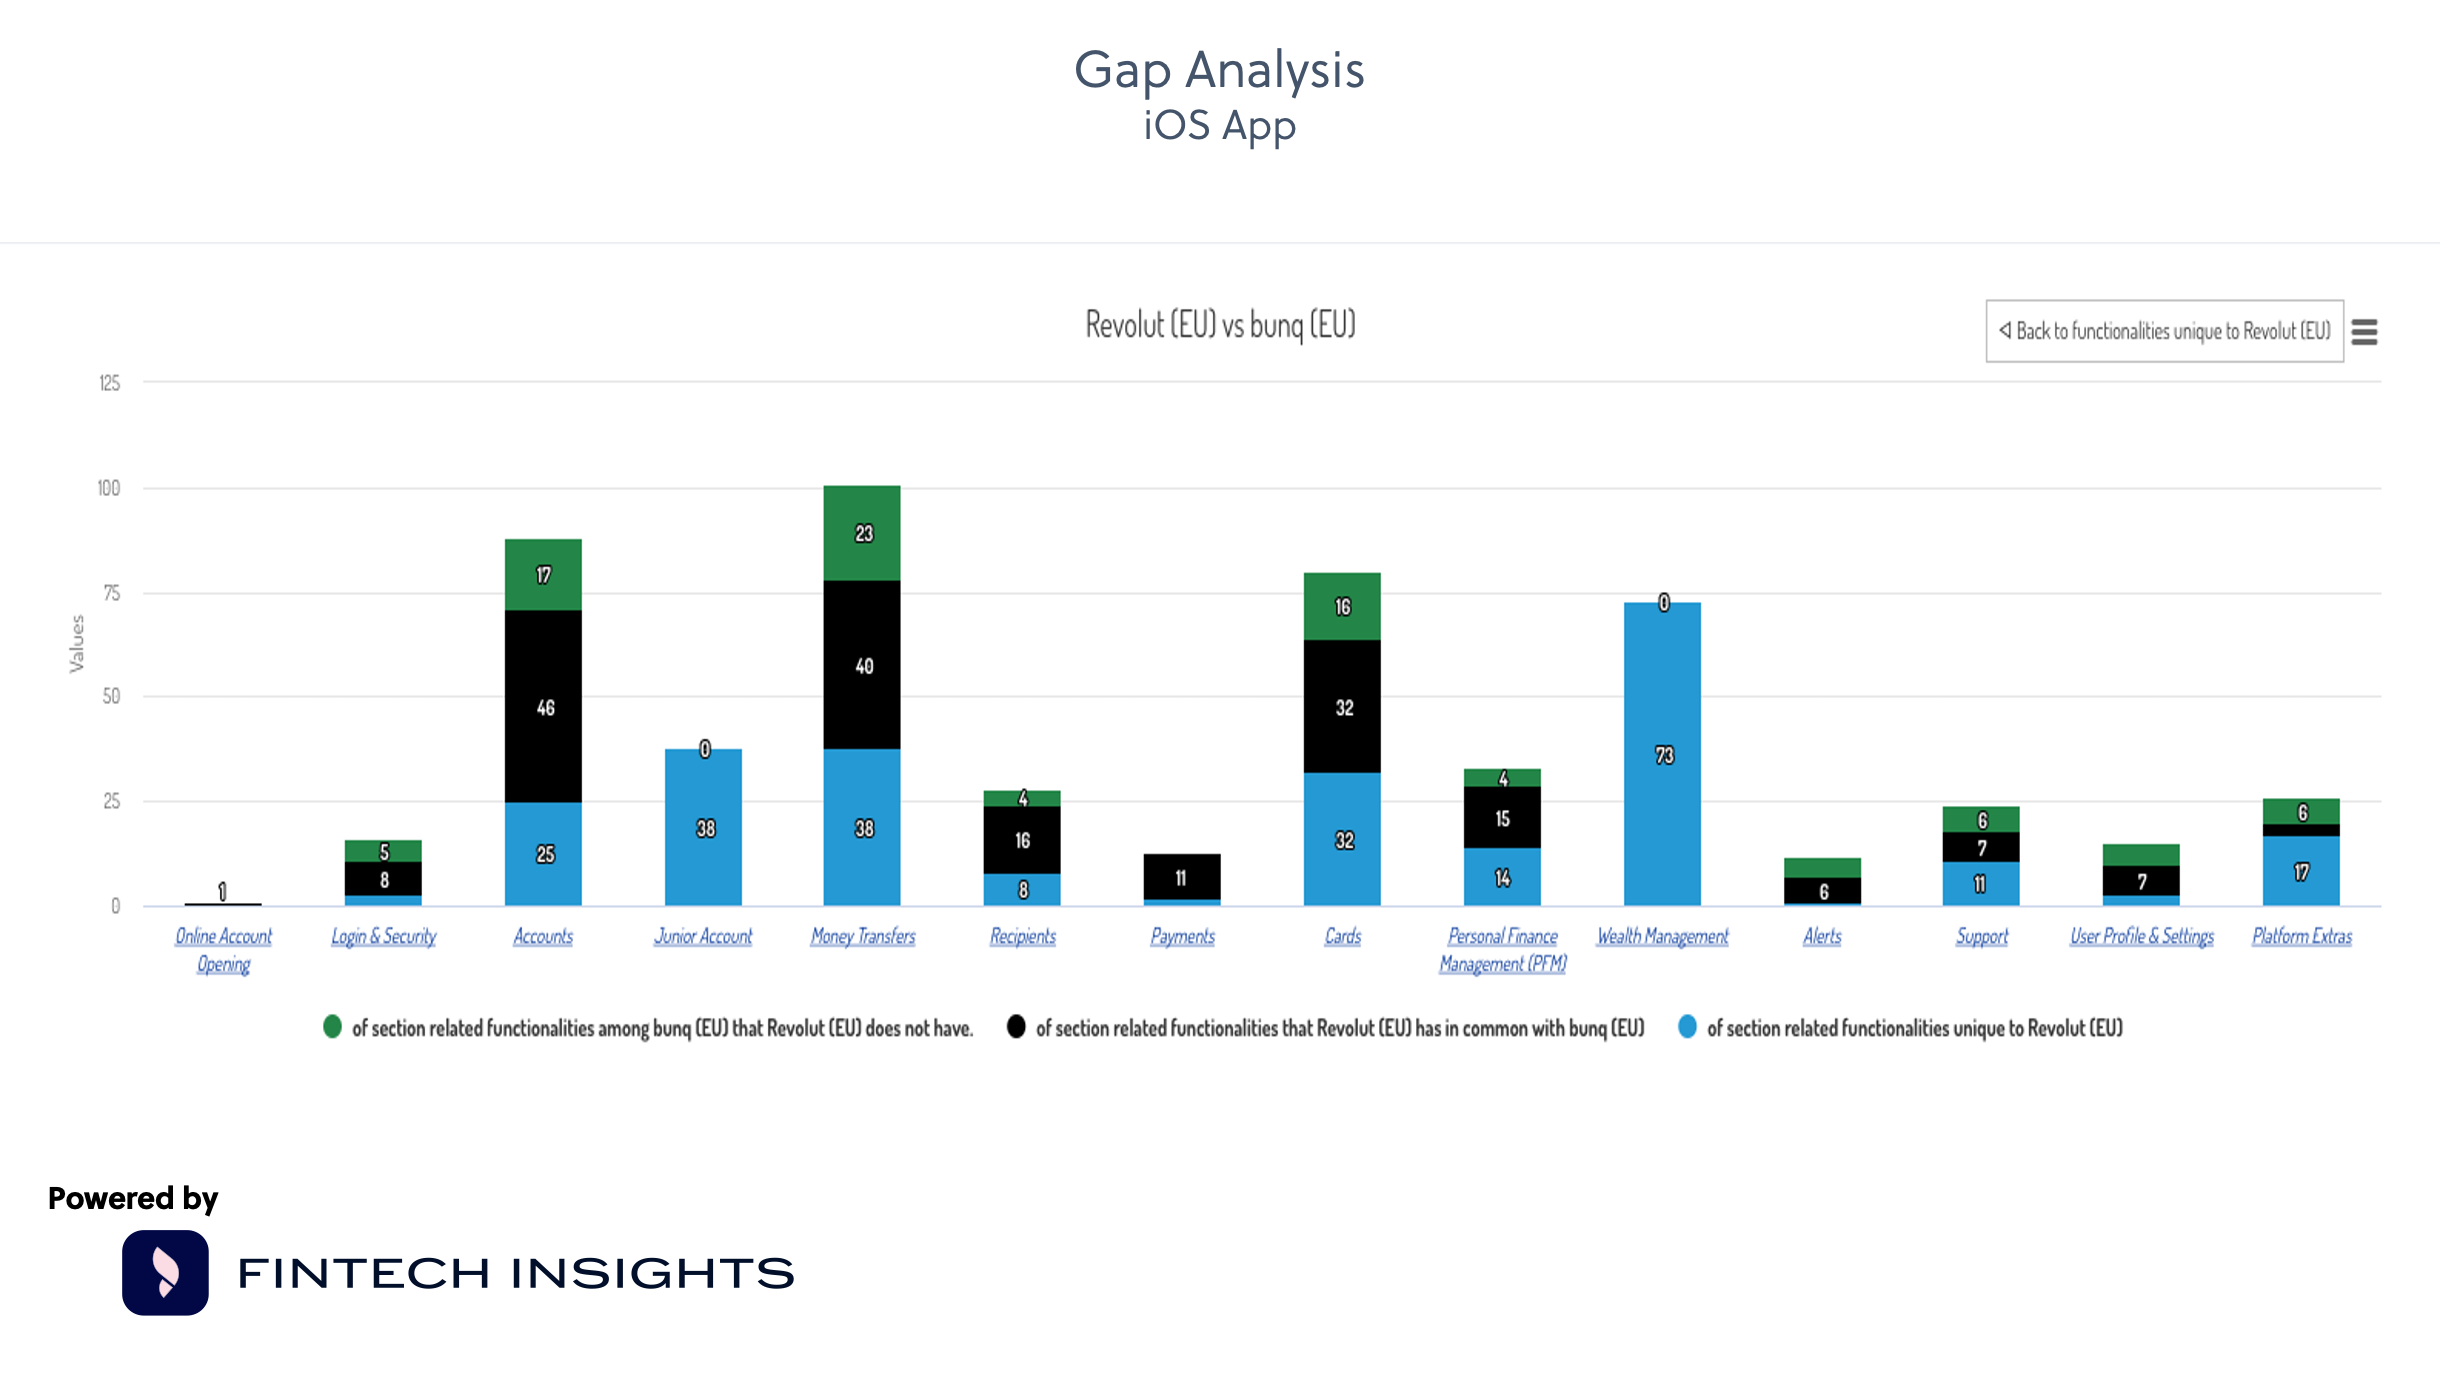 Gap Analysis Revolut vs bunq